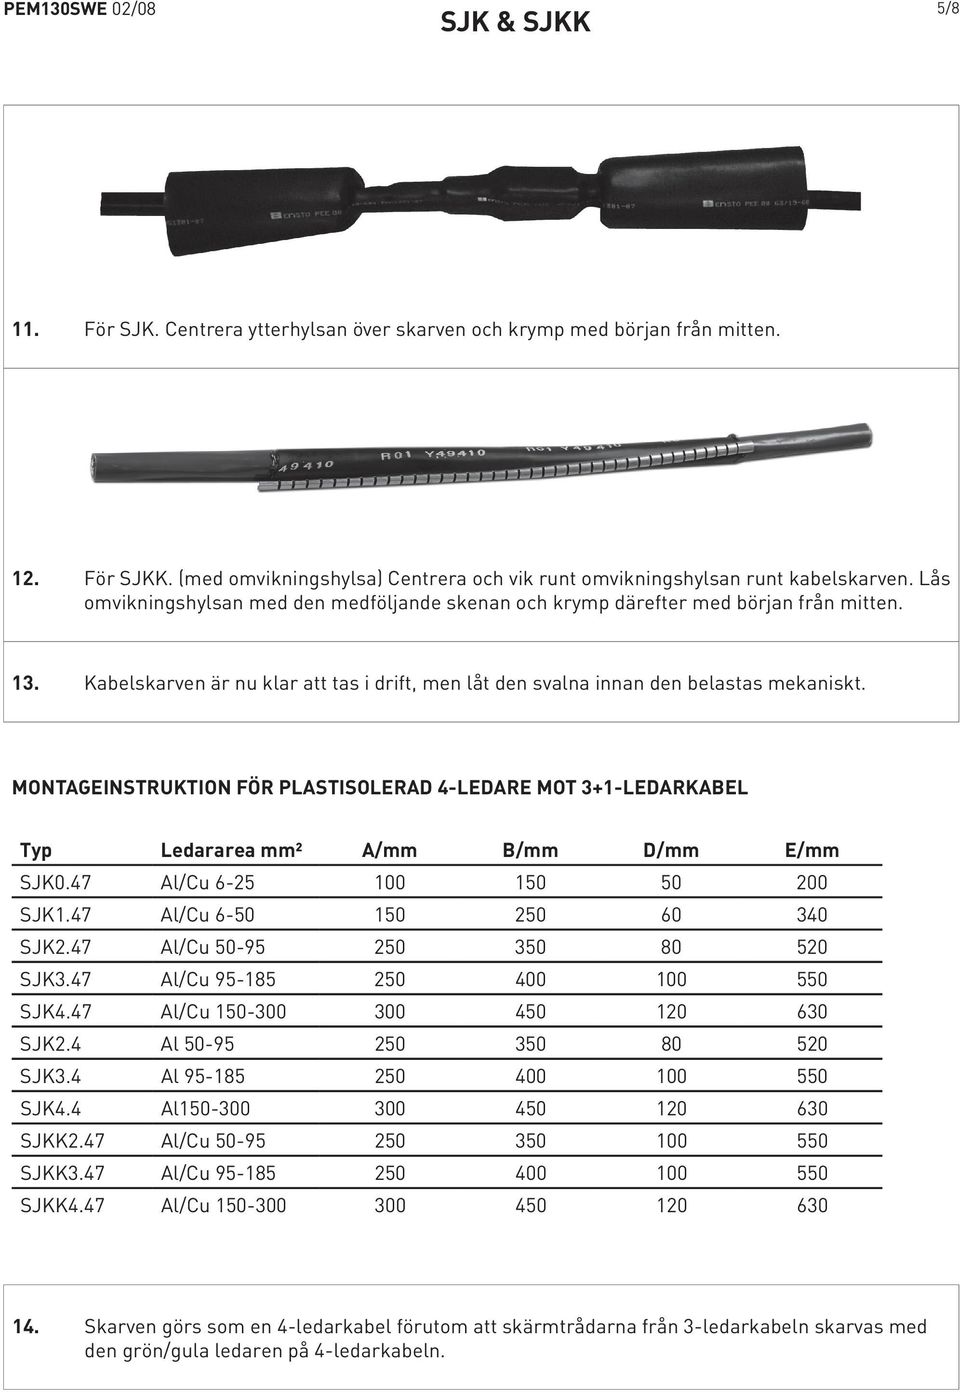 MONTAGEINSTRUKTION FÖR PLASTISOLERAD 4-LEDARE MOT 3+1-LEDARKABEL Typ Ledararea mm² A/mm B/mm D/mm E/mm SJK0.47 Al/Cu 6-25 100 150 50 200 SJK1.47 Al/Cu 6-50 150 250 60 340 SJK2.